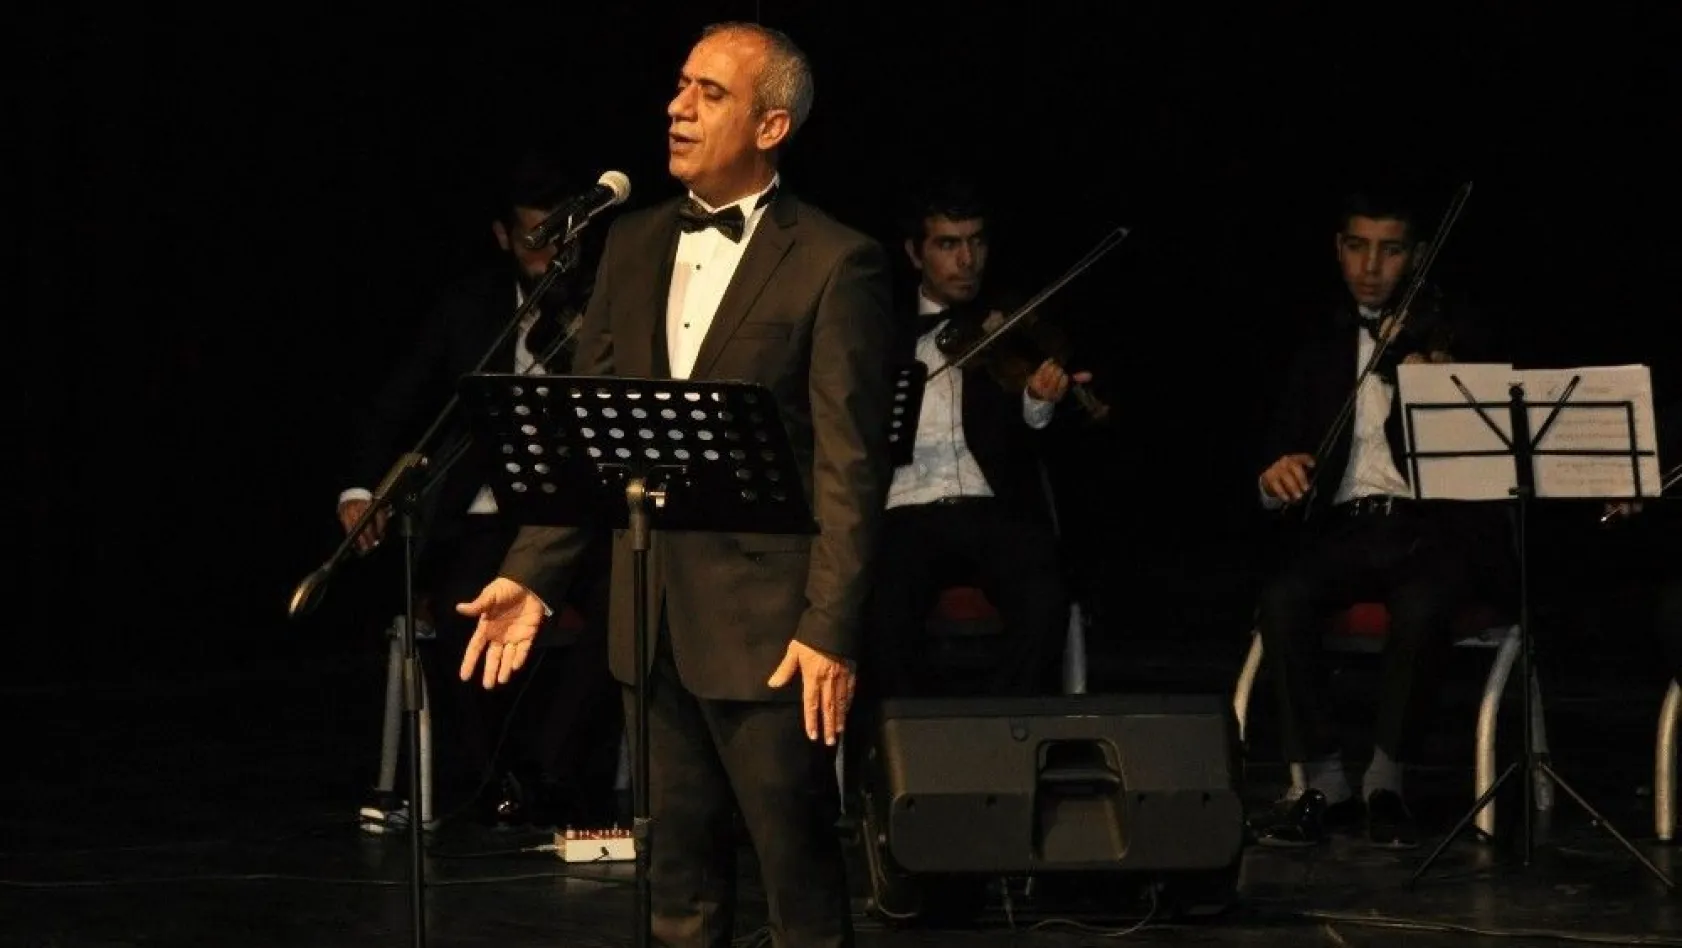 Çanakkale Zaferi, Diyarbakır'da Kürtçe Çanakkale Türküsü ile kutlandı
